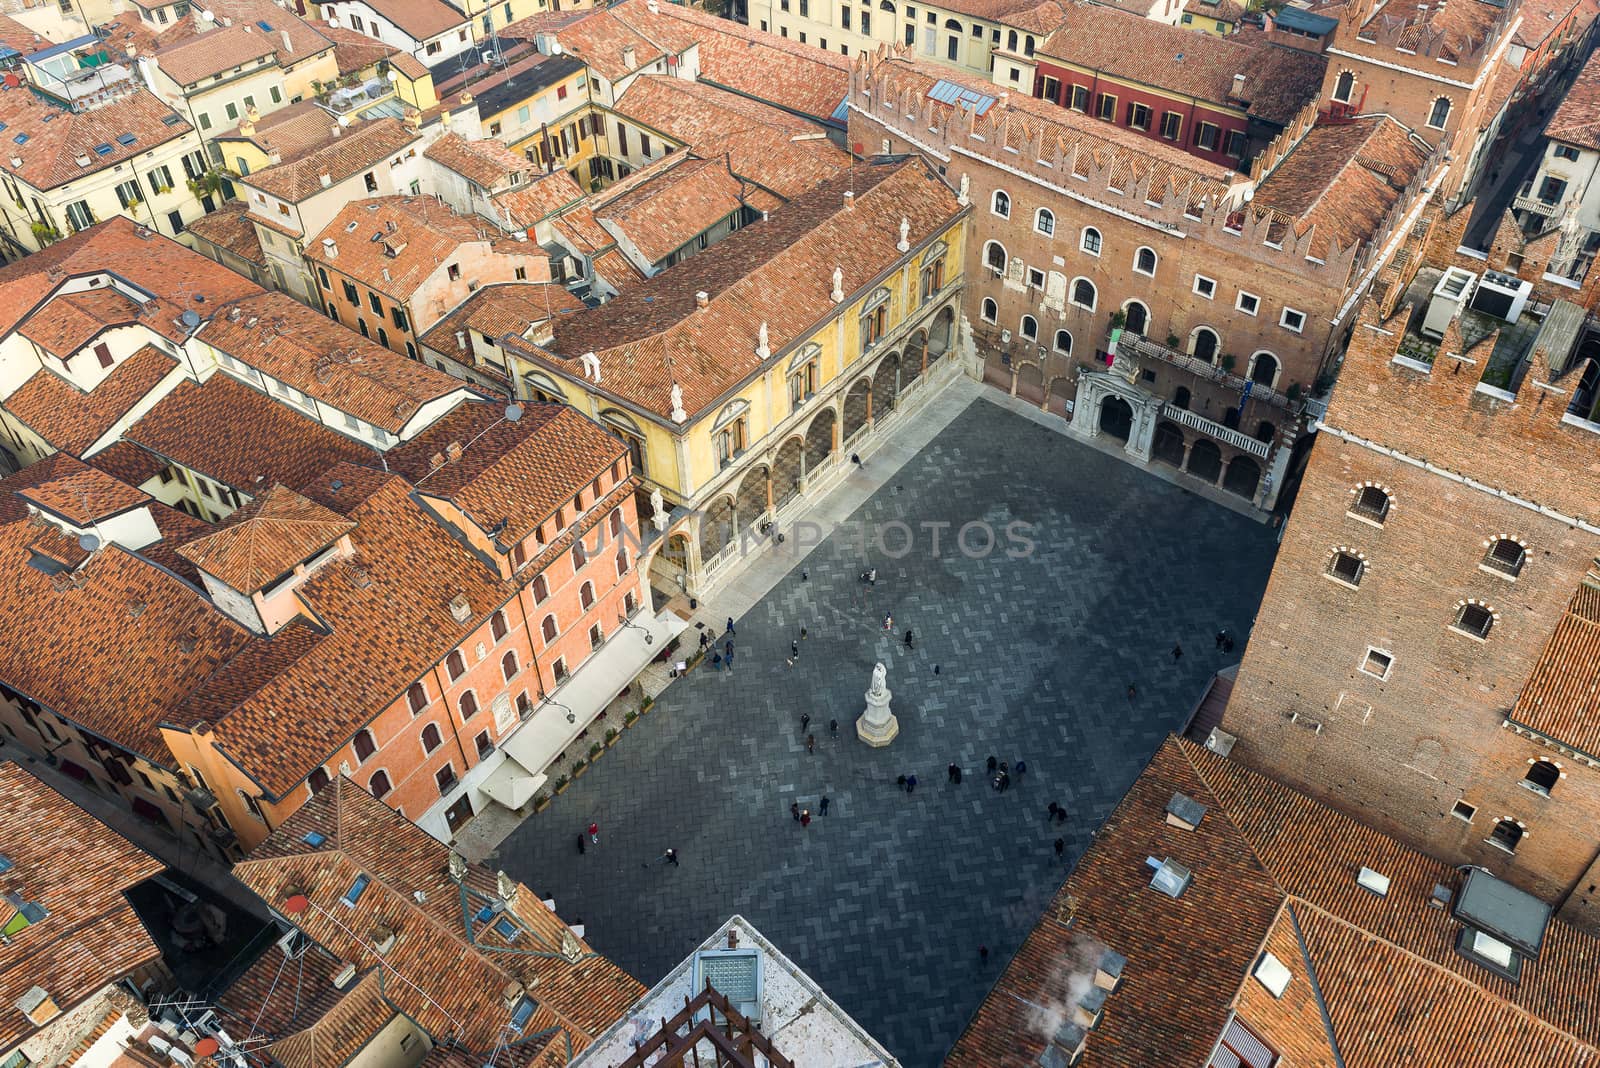 Piazza dei Signori in Verona by faabi